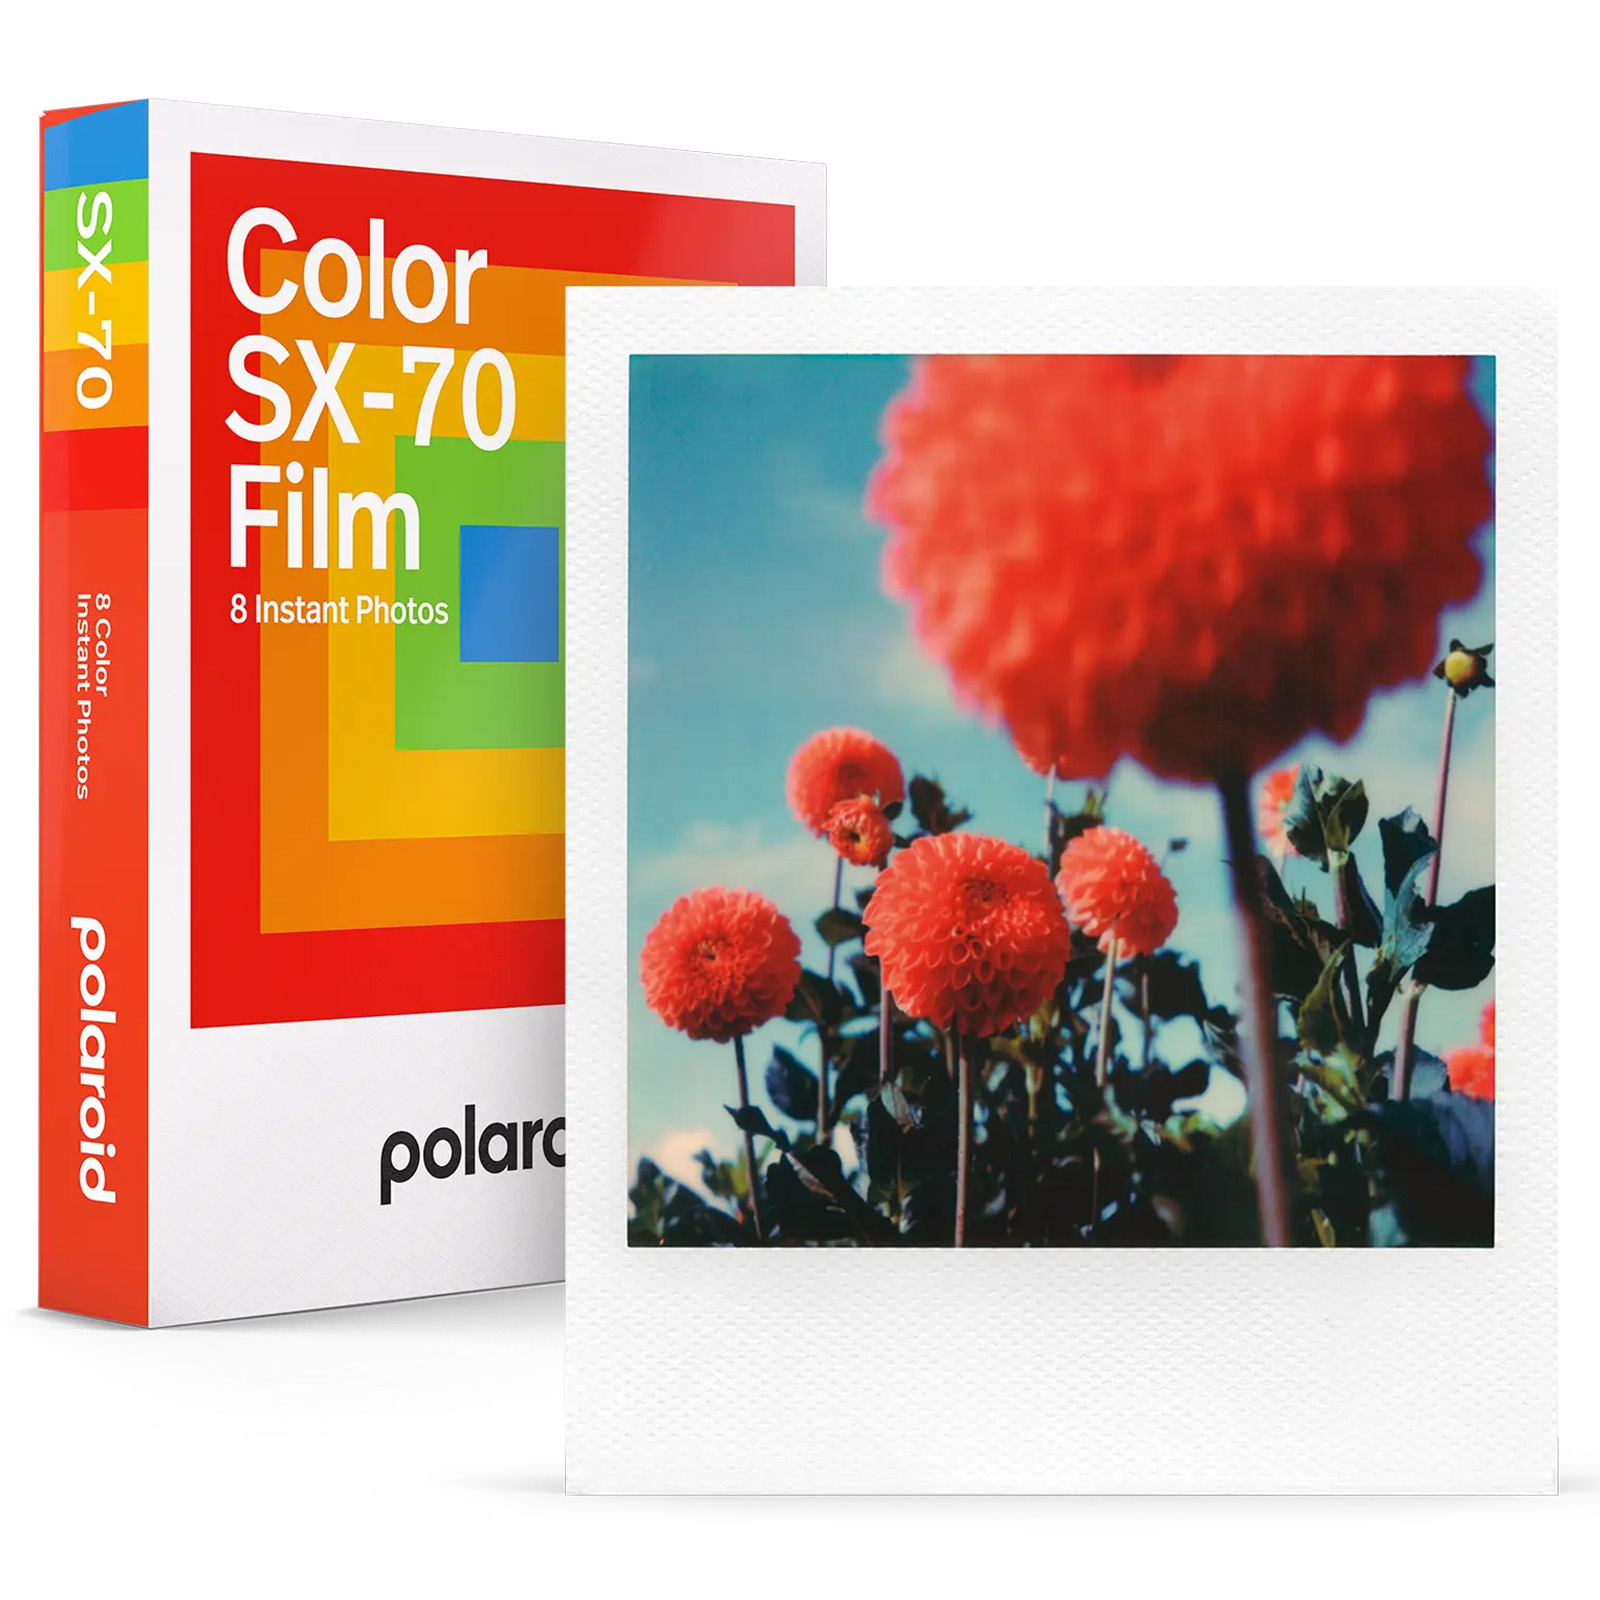 Polaroid® 690 Film